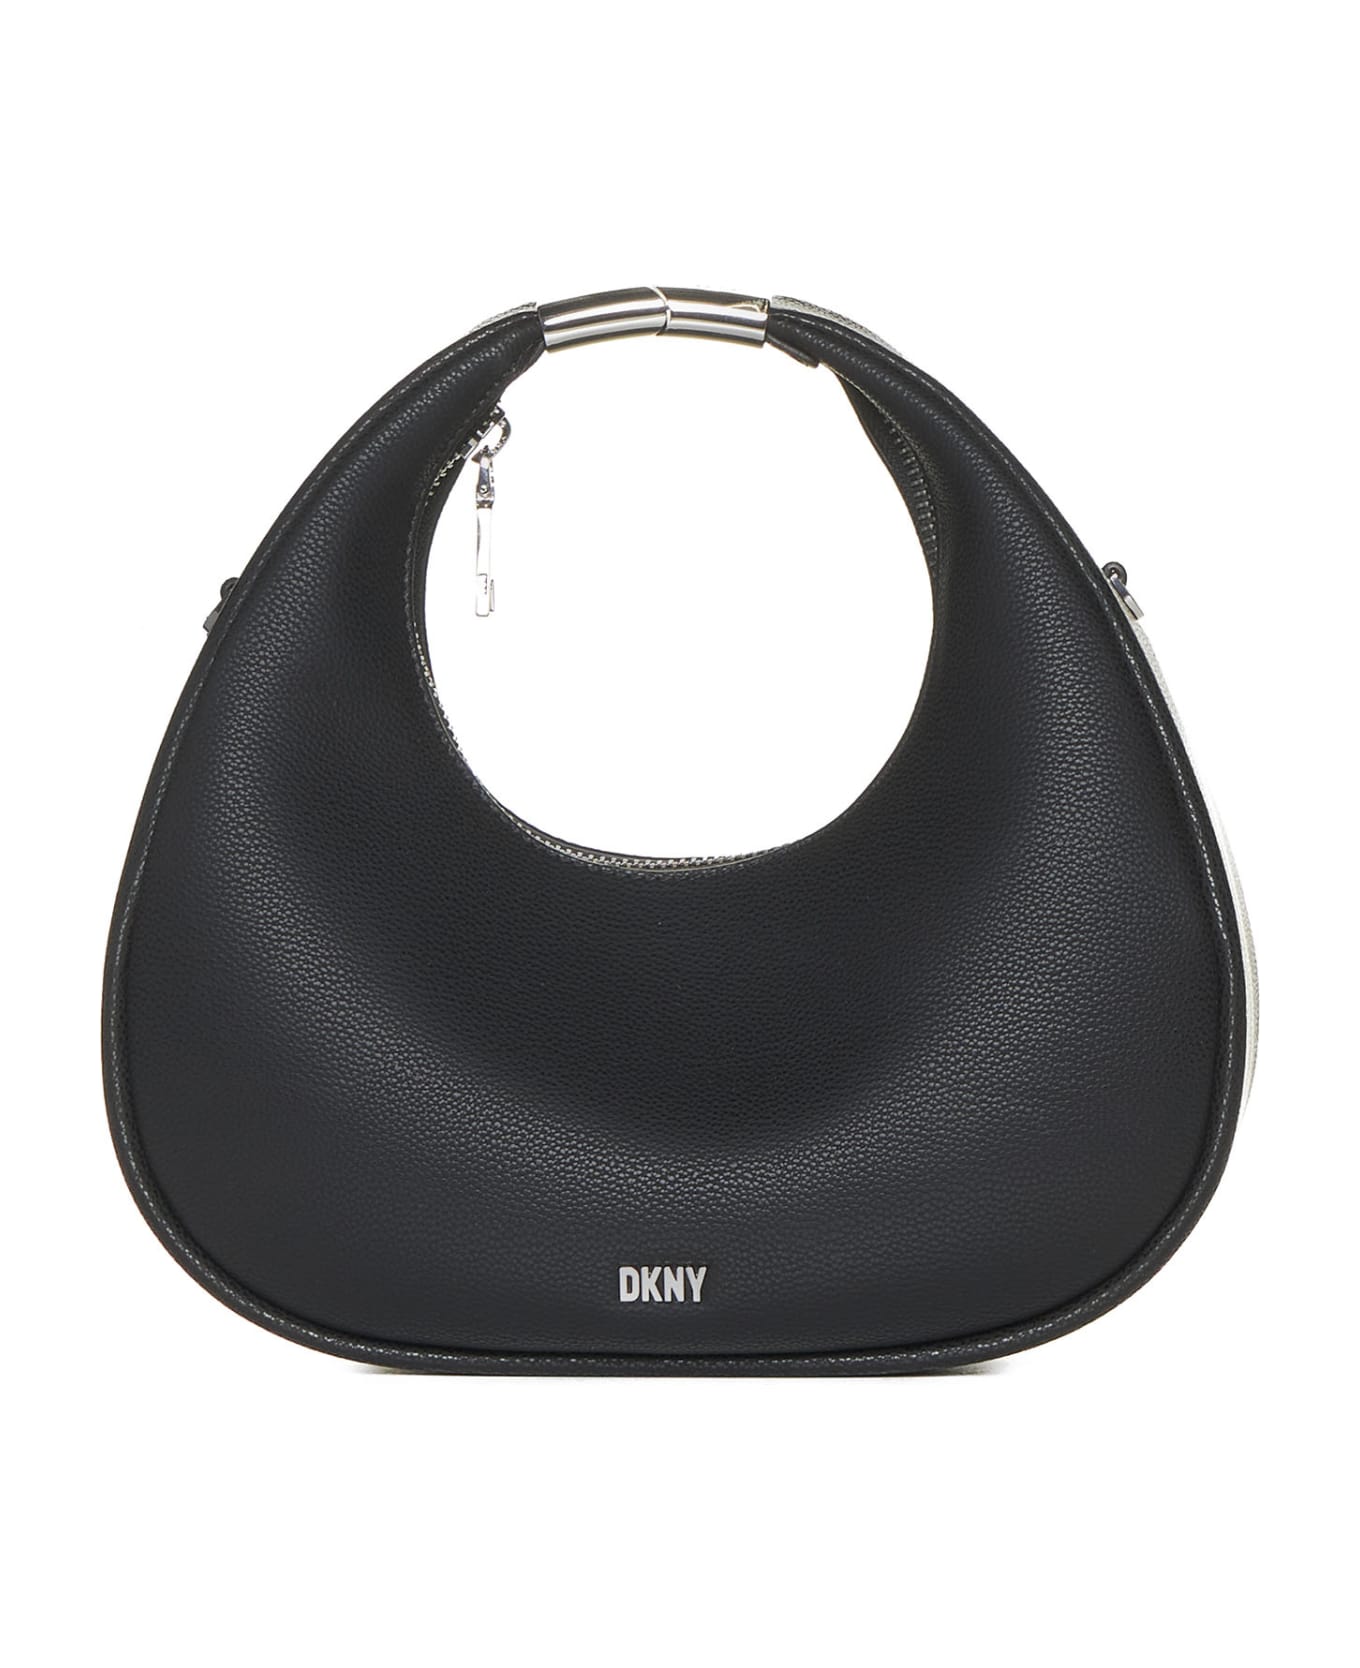 DKNY Shoulder Bag - Black/silver